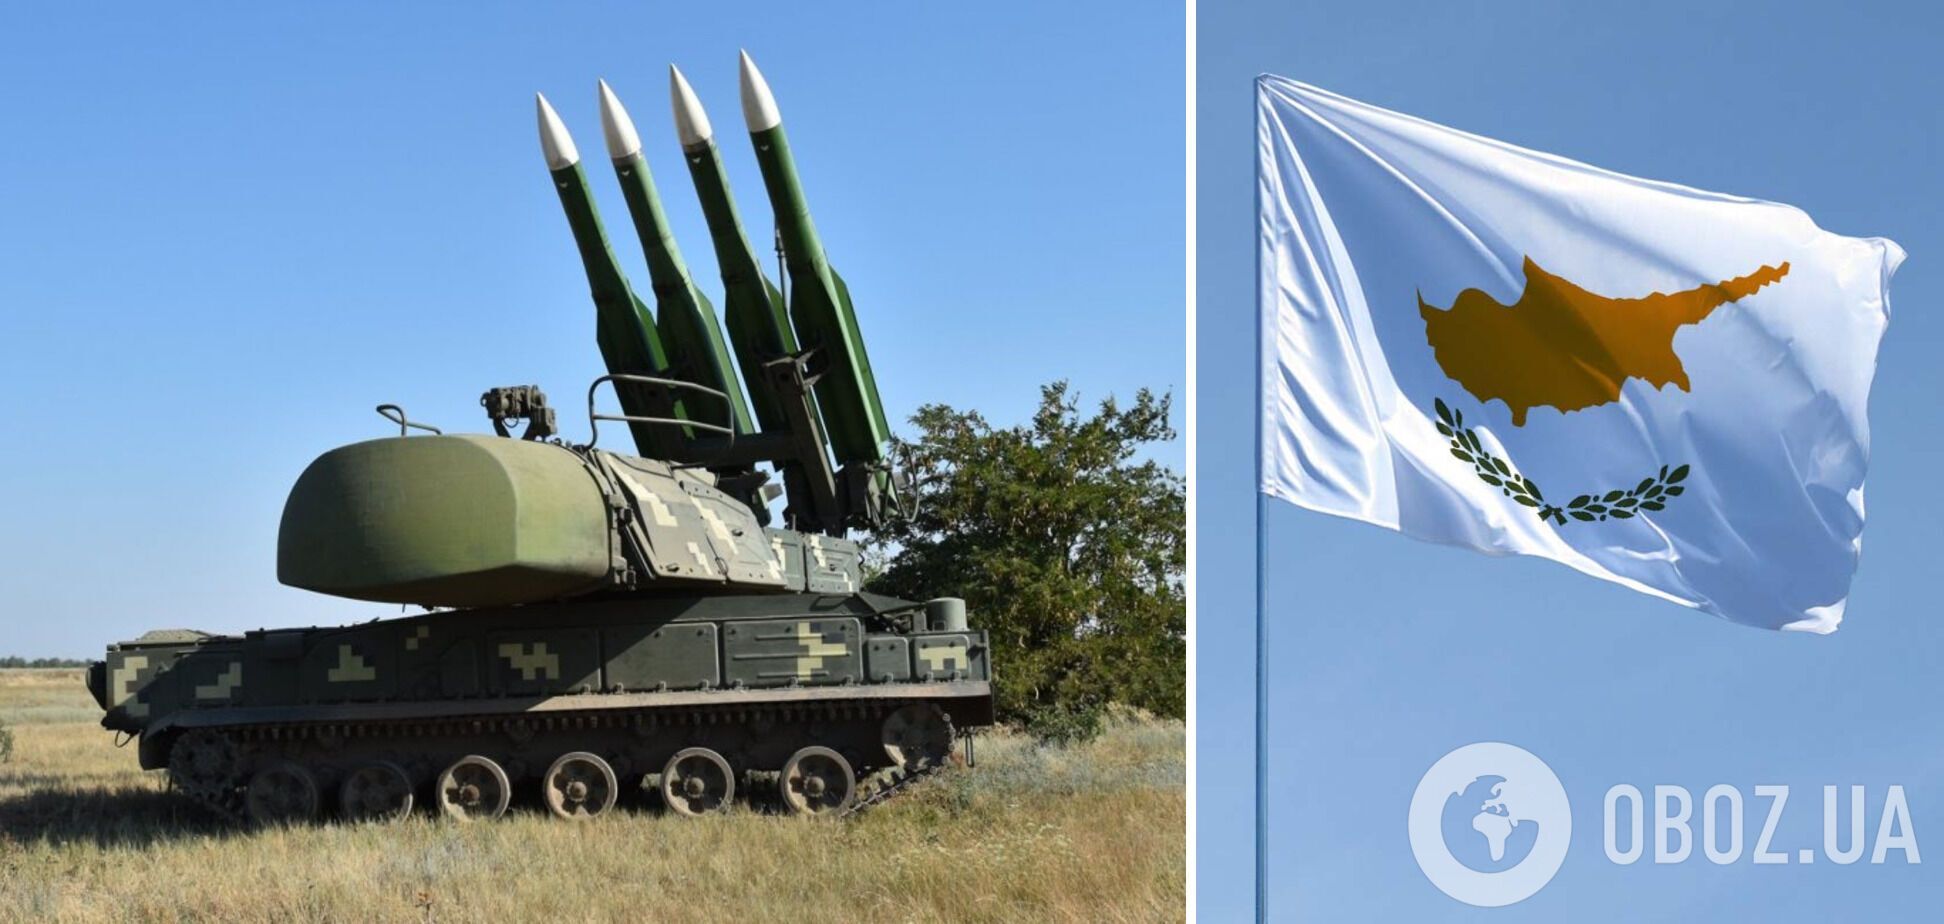 Кипр может отдать Украине советские системы ПВО